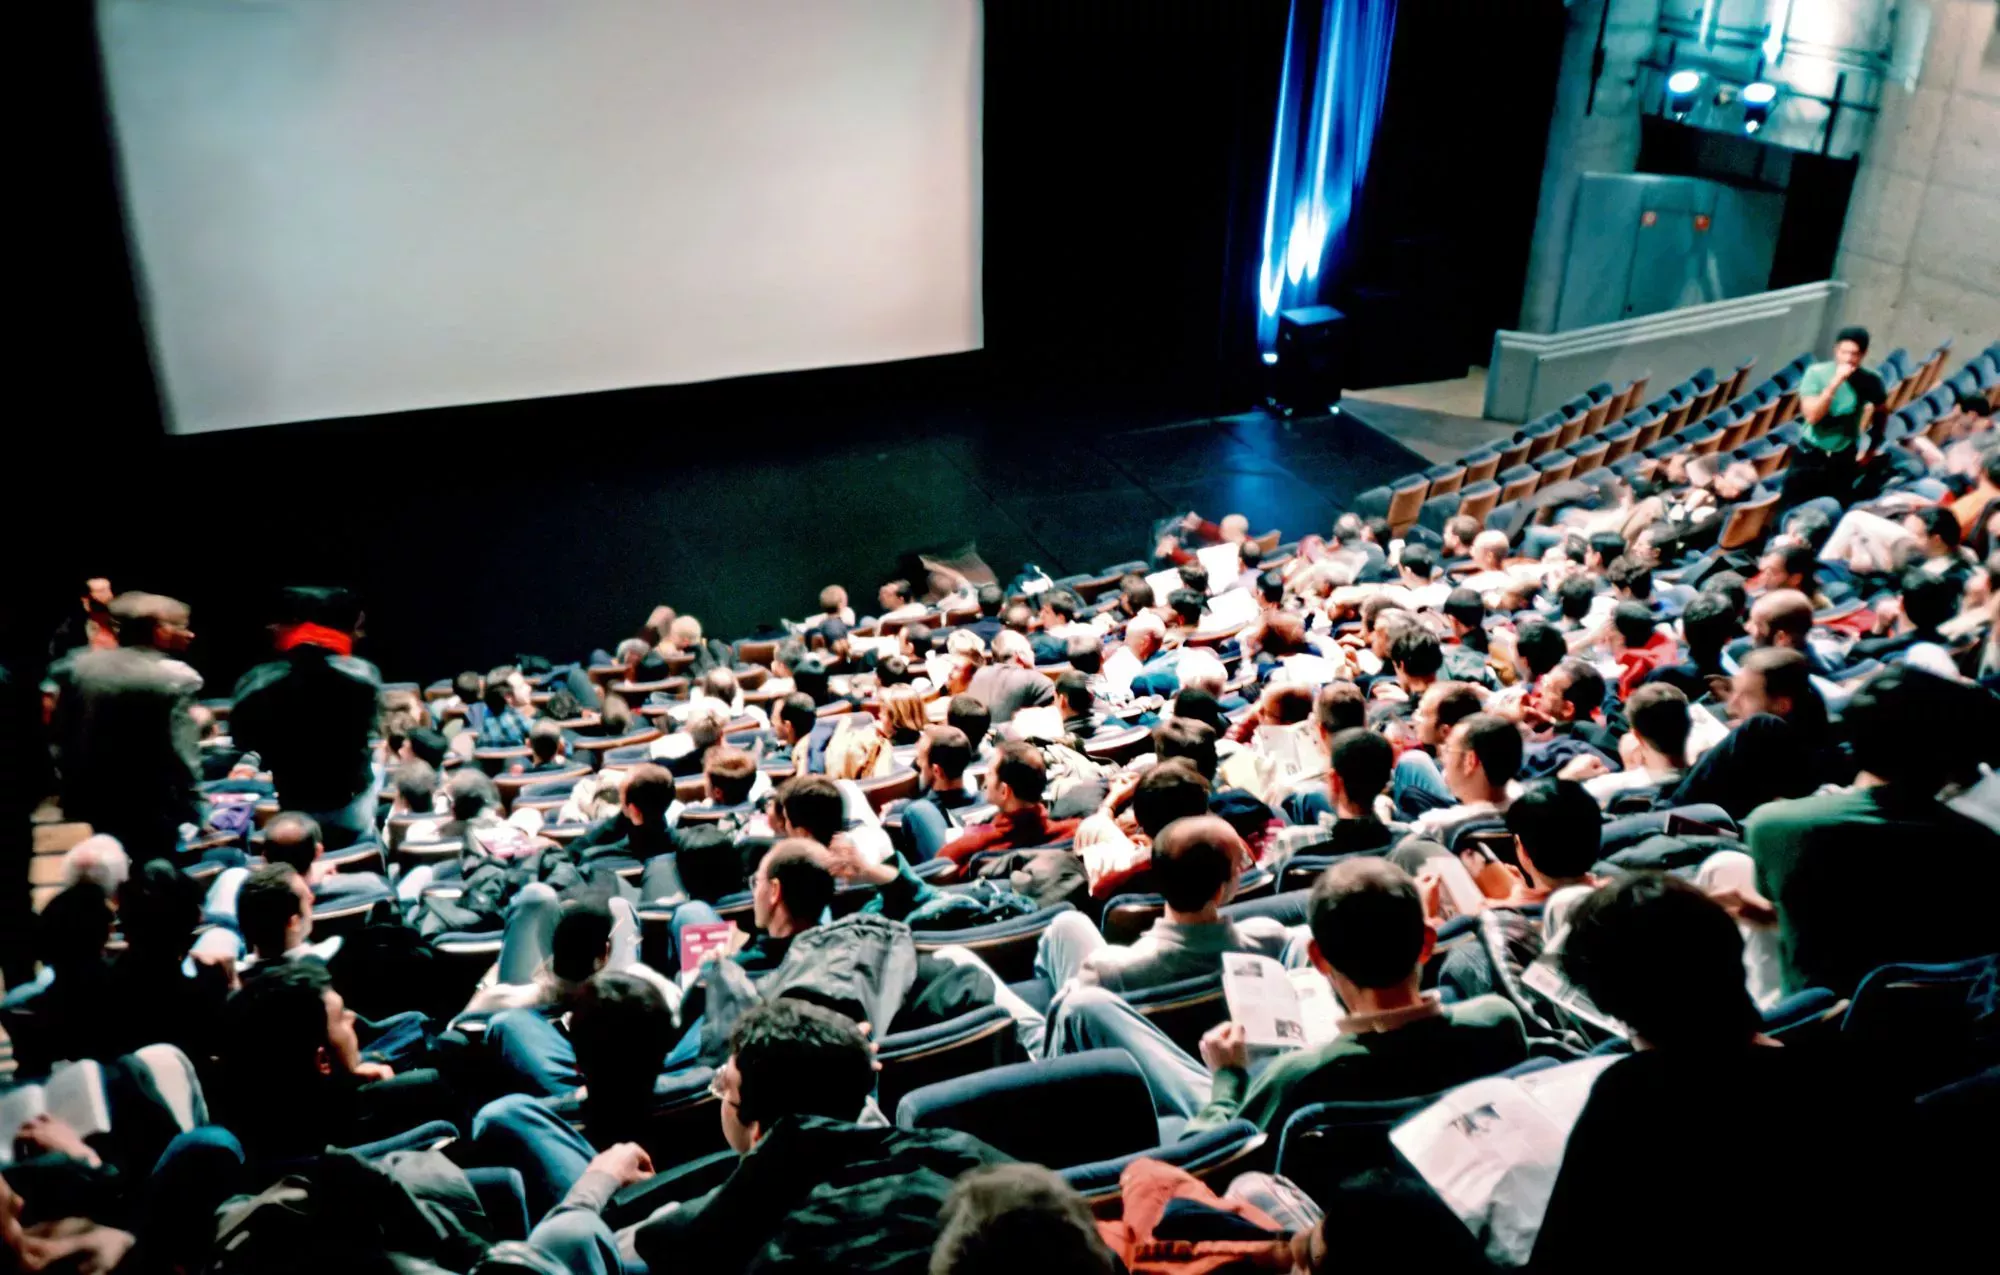 Los cines cambian el precio de las entradas según dónde te sientes